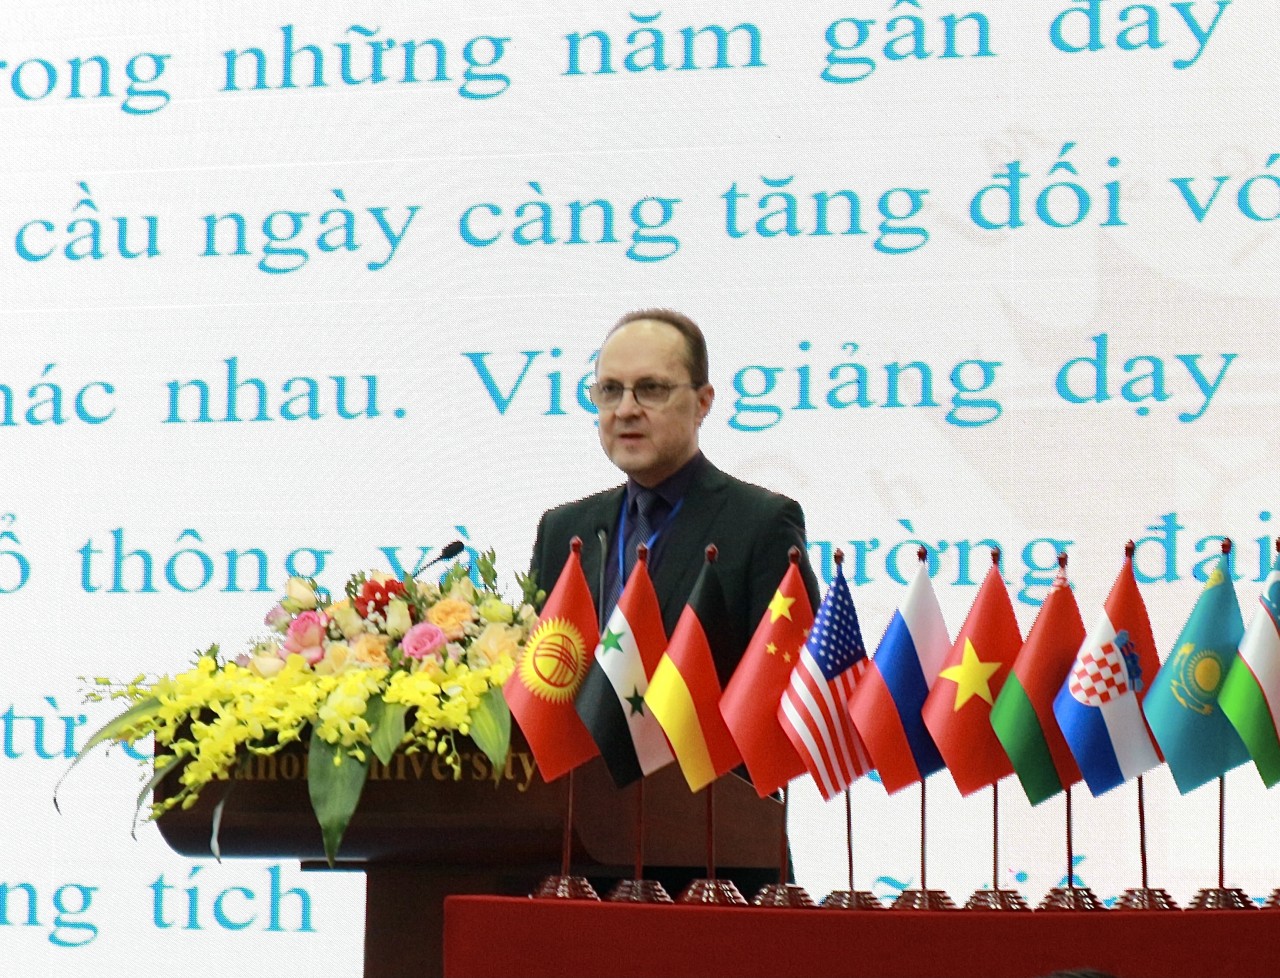 Giao lưu trao đổi học thuật giữa các nhà khoa học, Nga ngữ học Việt Nam và Liên bang Nga